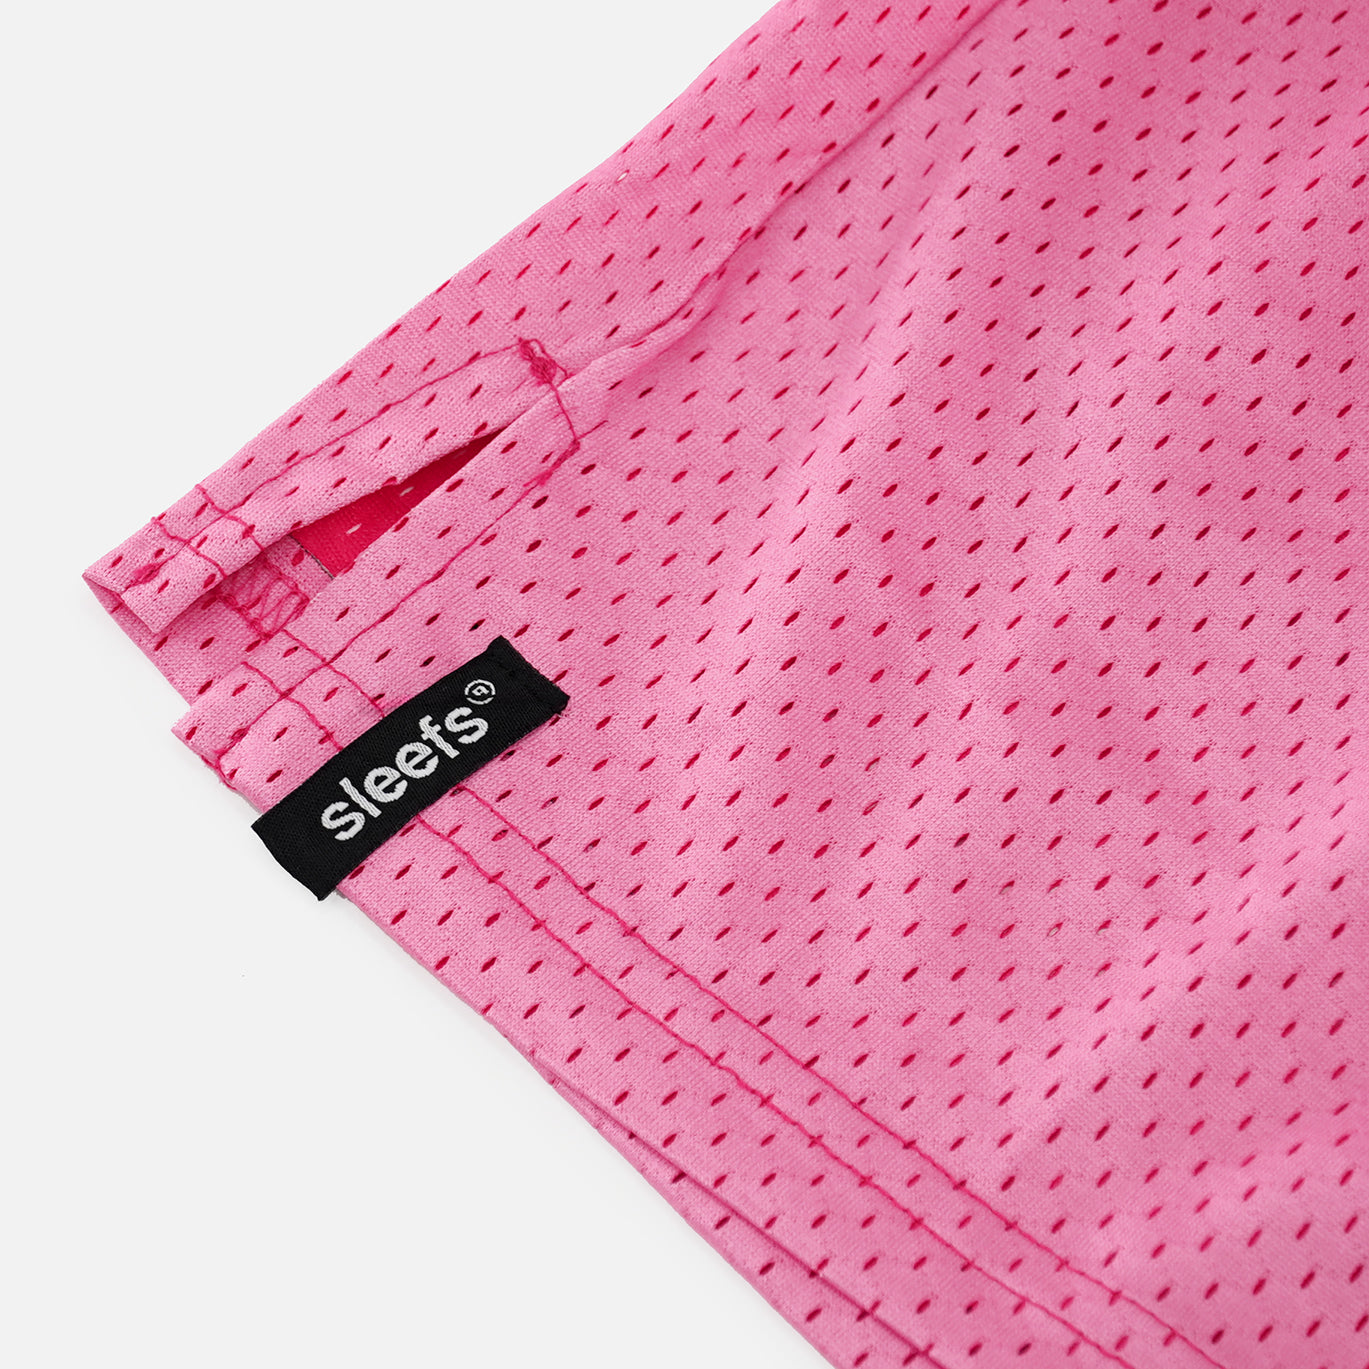 Pink Dawn Shorts - 7"